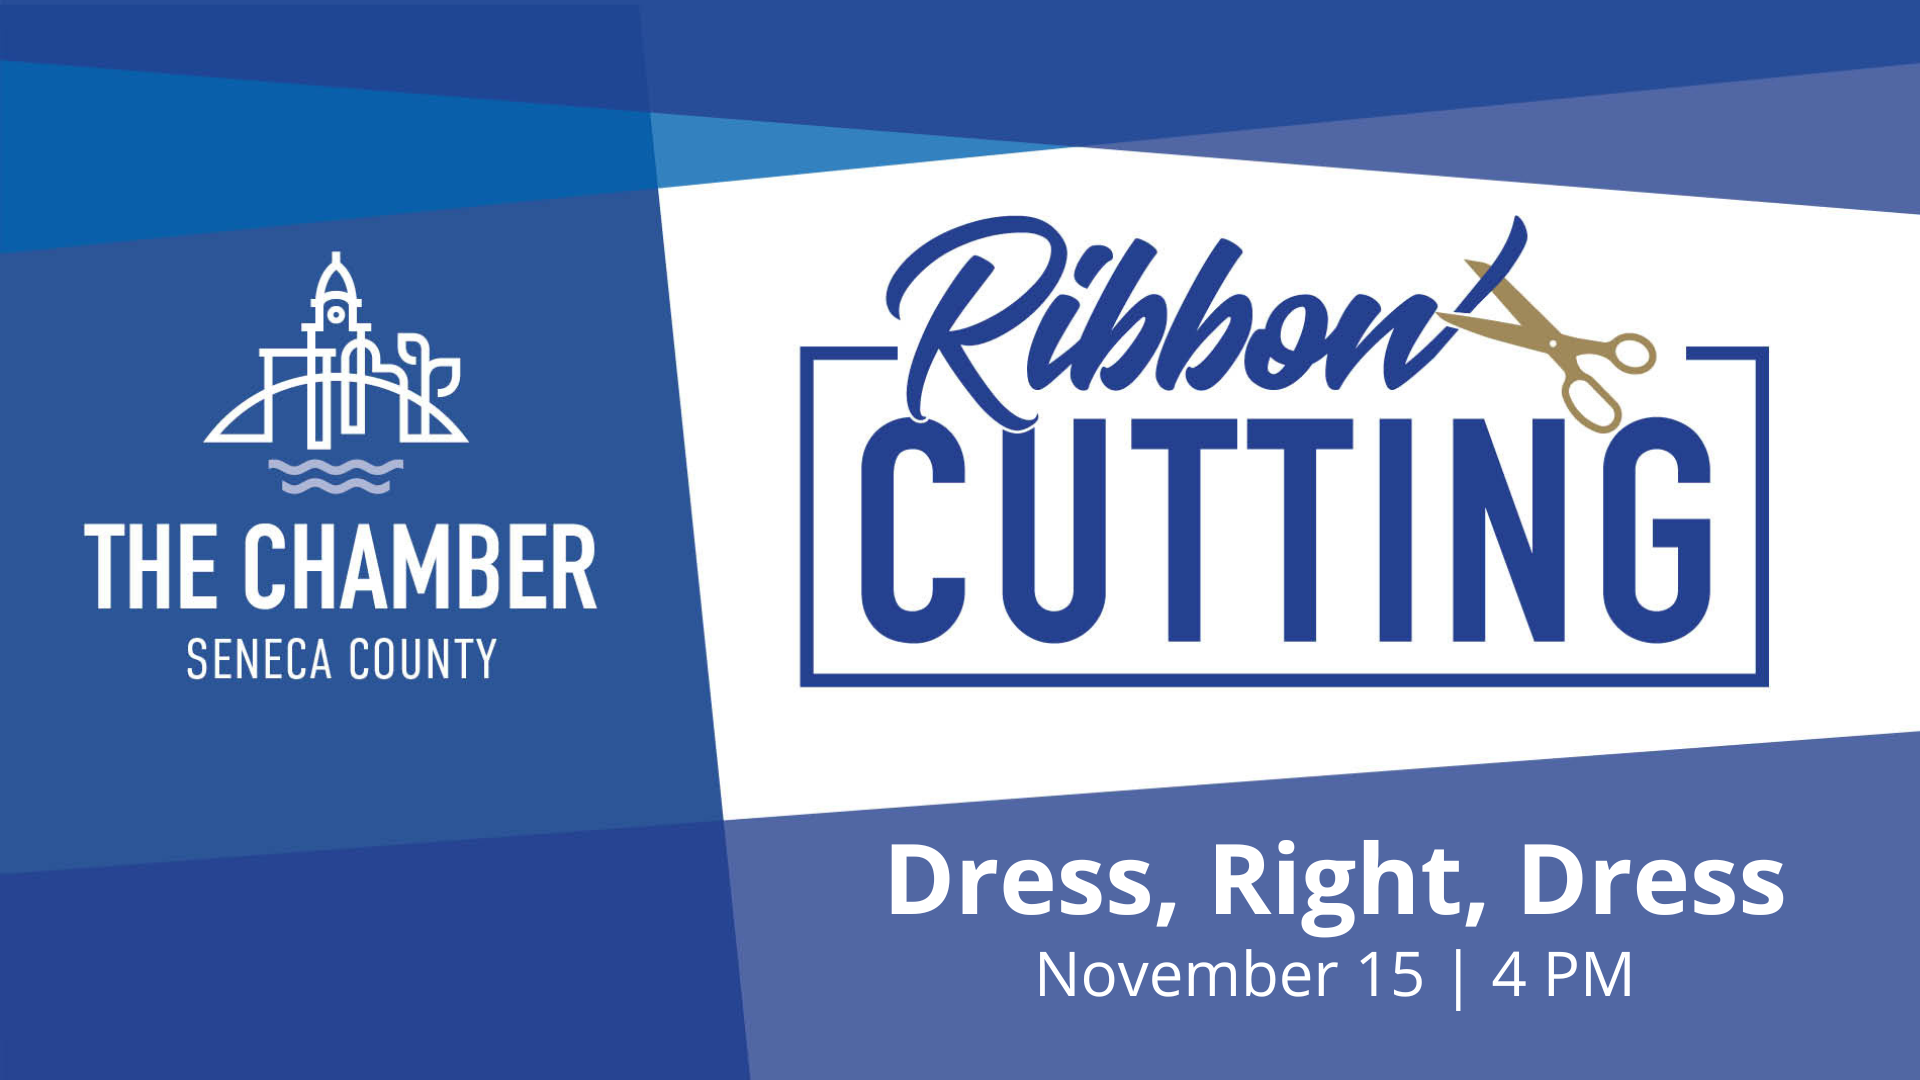 Ribbon Cutting Dress, Right, Dress